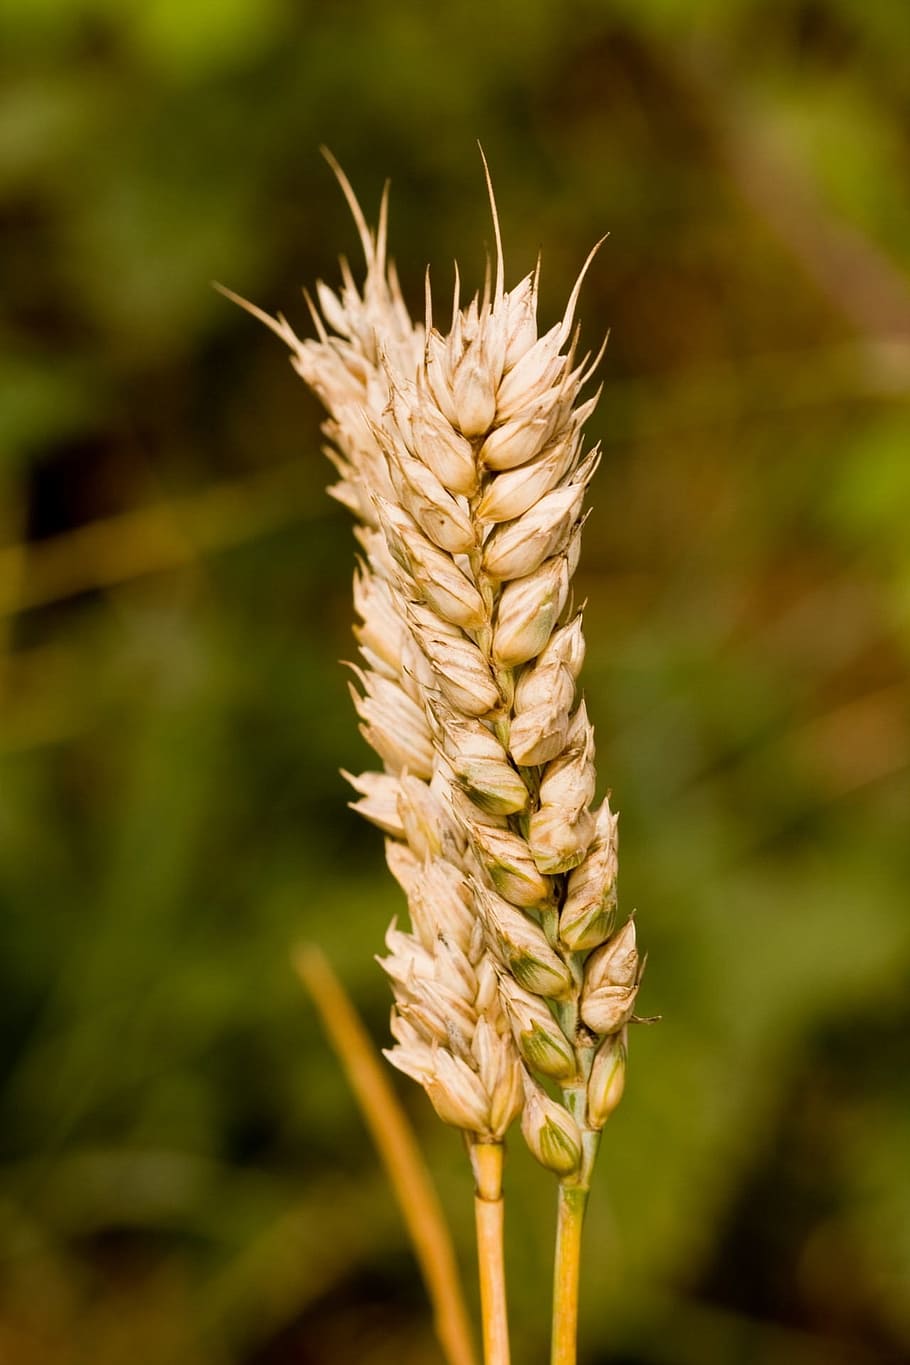 Trigo, Caule, Close-Up, caule de trigo, dourado, detalhes, natureza, grãos, culturas, agricultura